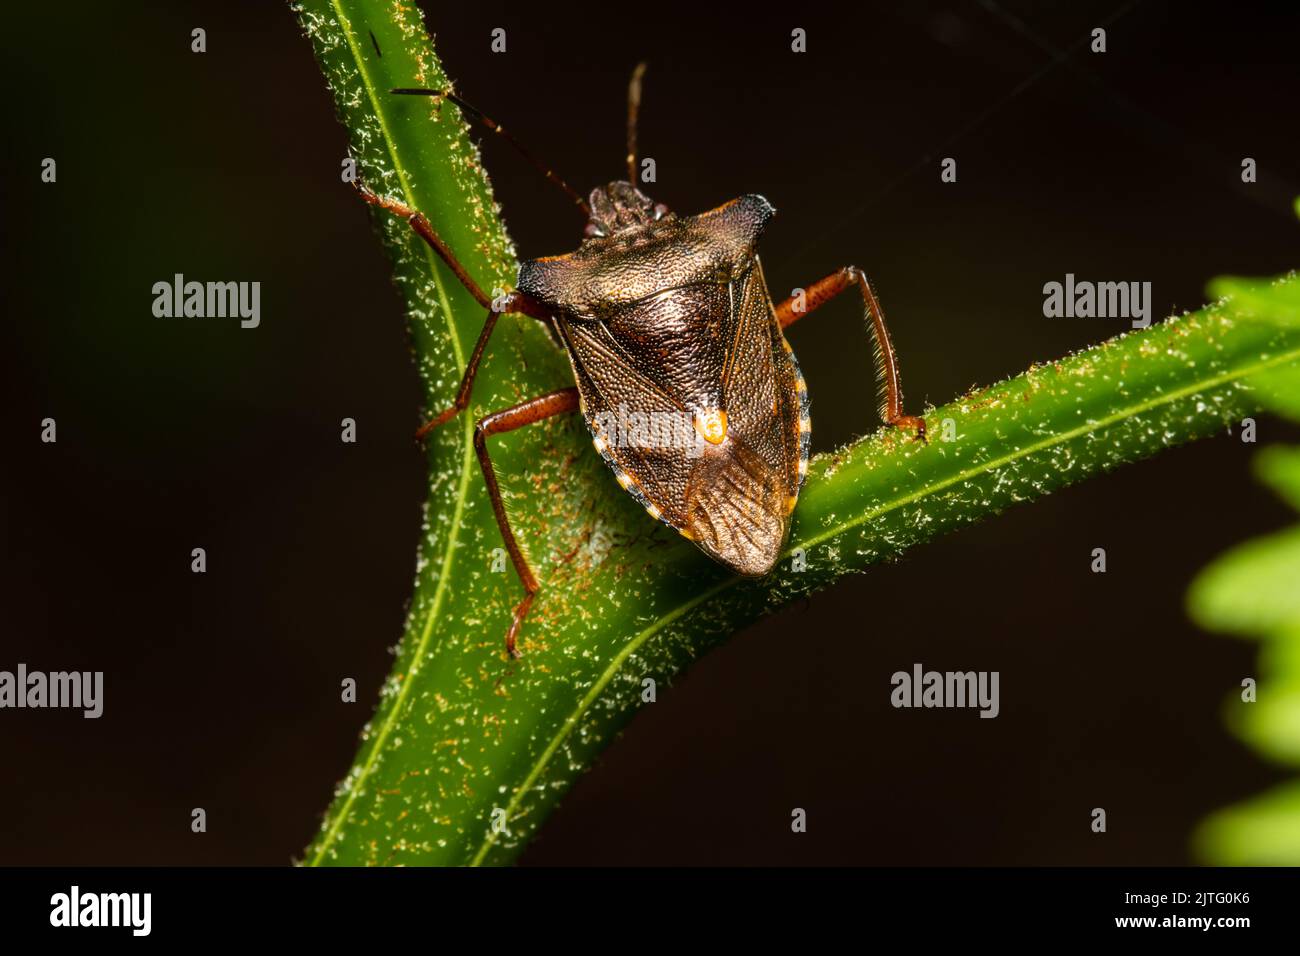 Un insecte forestier aussi connu sous le nom de punaise à pattes rouges, Pentatoma rufipes, perché sur une tige de plante. Banque D'Images